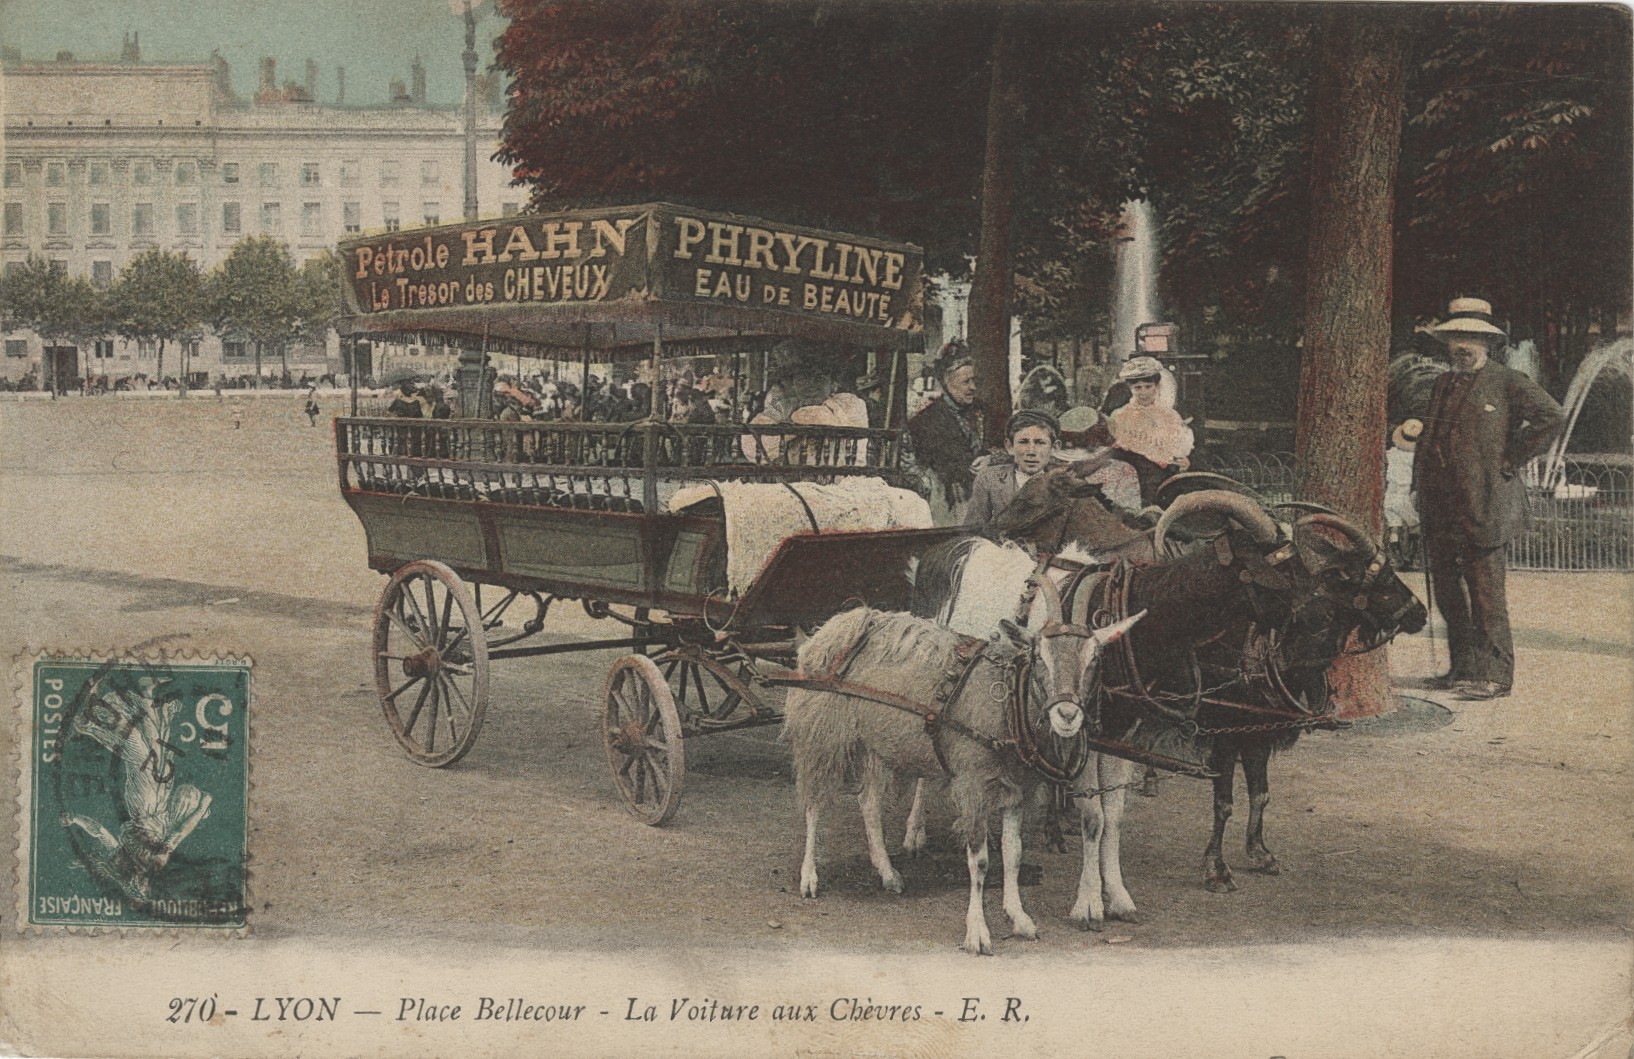 Lyon - Place Bellecour, la voiture aux chèvres : carte postale colorisée (vers 1912, cote 4FI/1152)